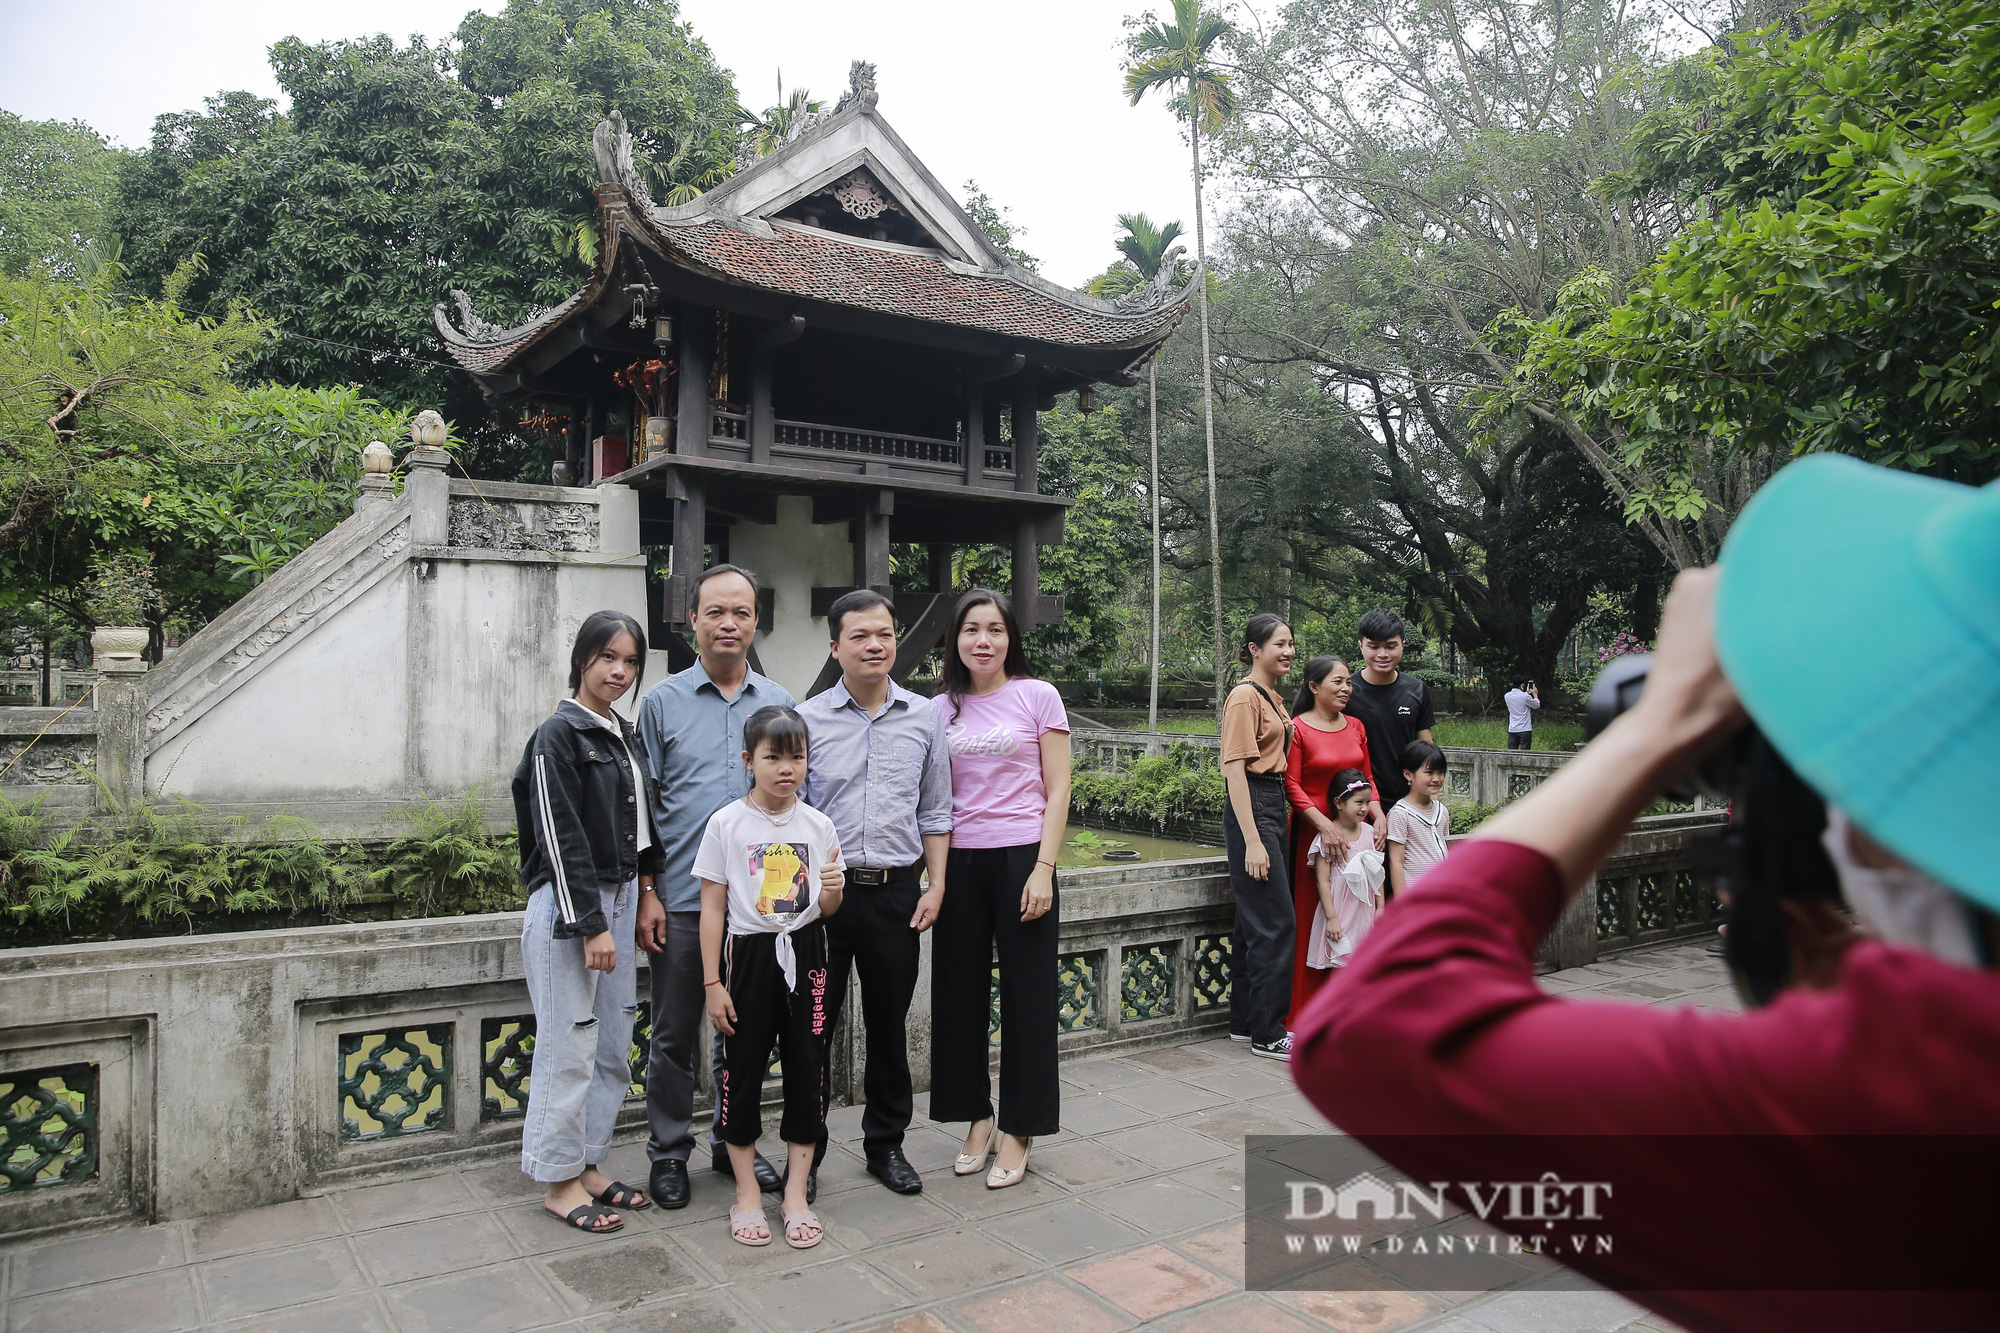 Bất ngờ lượng du khách tham quan lăng Bác, bảo tàng tại Hà Nội trong sáng 30/4 - Ảnh 6.